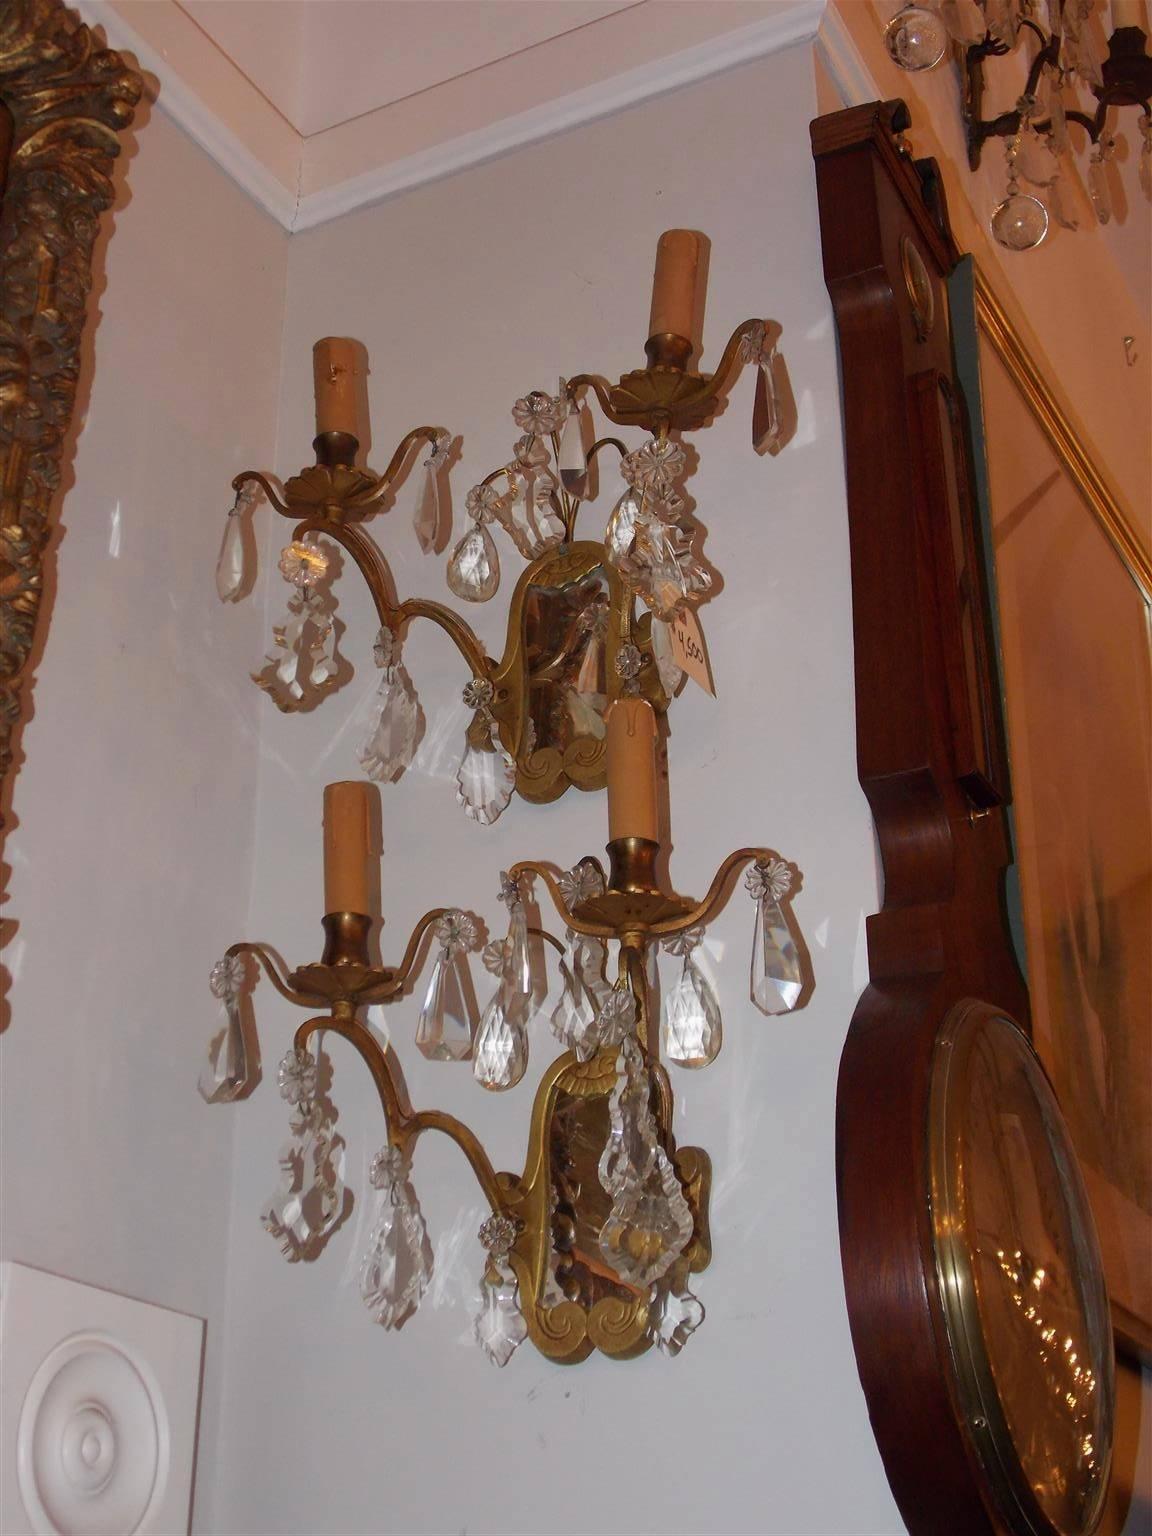 Zwei zweiarmige französische Wandleuchter aus vergoldeter Bronze und Kristall mit dekorativem Rankenwerk und verspiegelten Rückseiten. Die ursprünglich mit Kerzen betriebenen Wandleuchten wurden Ende des 19. Jahrhunderts elektrifiziert.